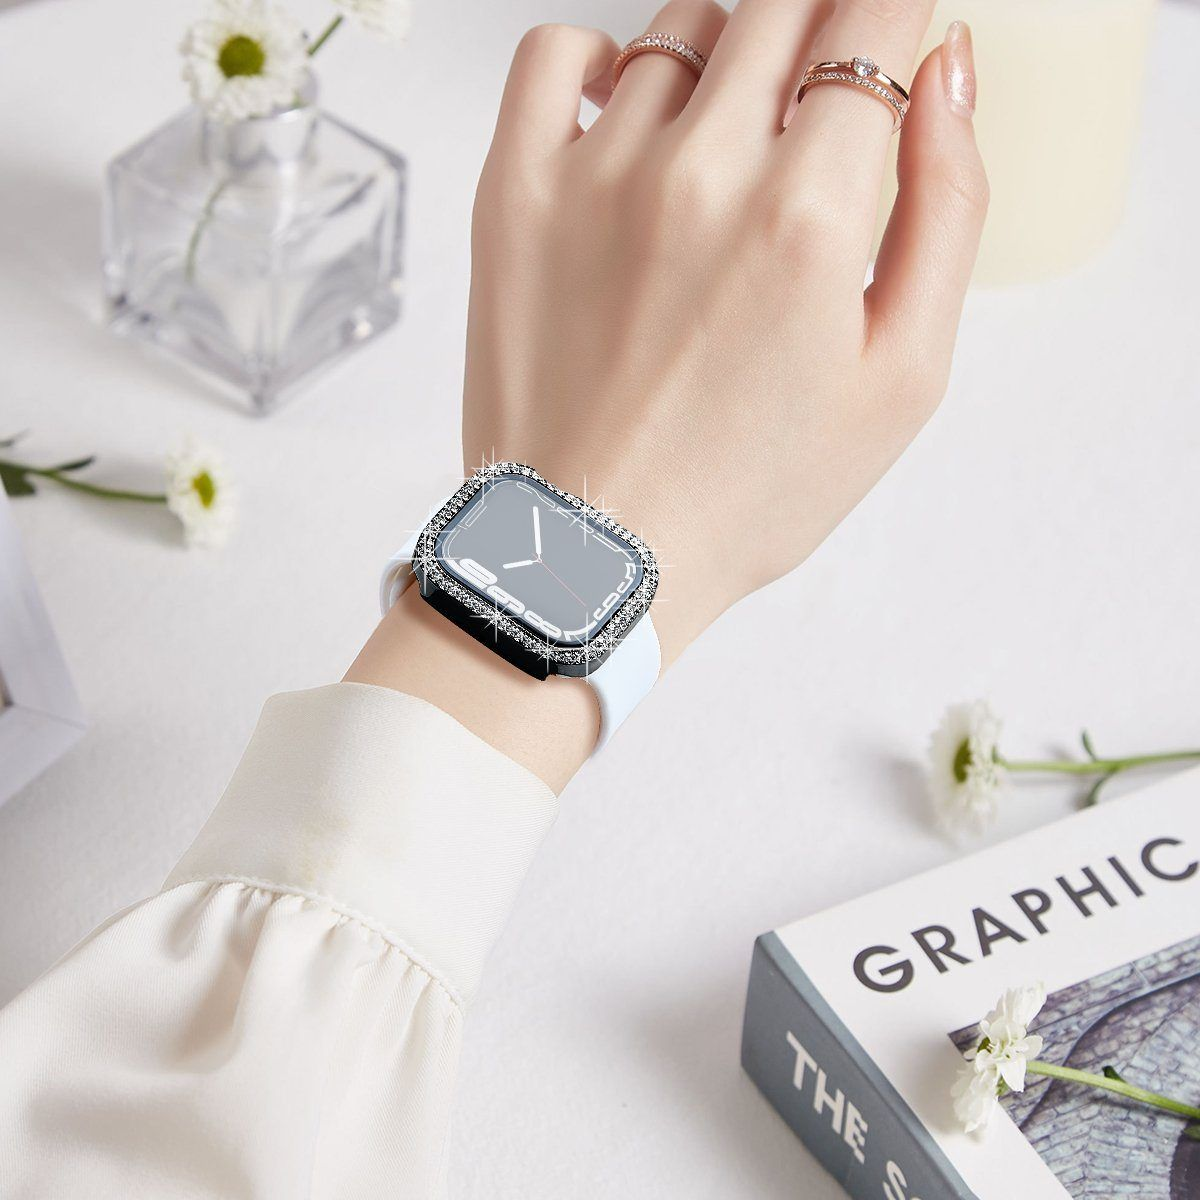 Uhrengehäuse(für Watch Smartwatch-Hülle 45MM) 45mm,für watch 8/7/6/5/4/SE Serie Apple Apple Case DIIDA Apple